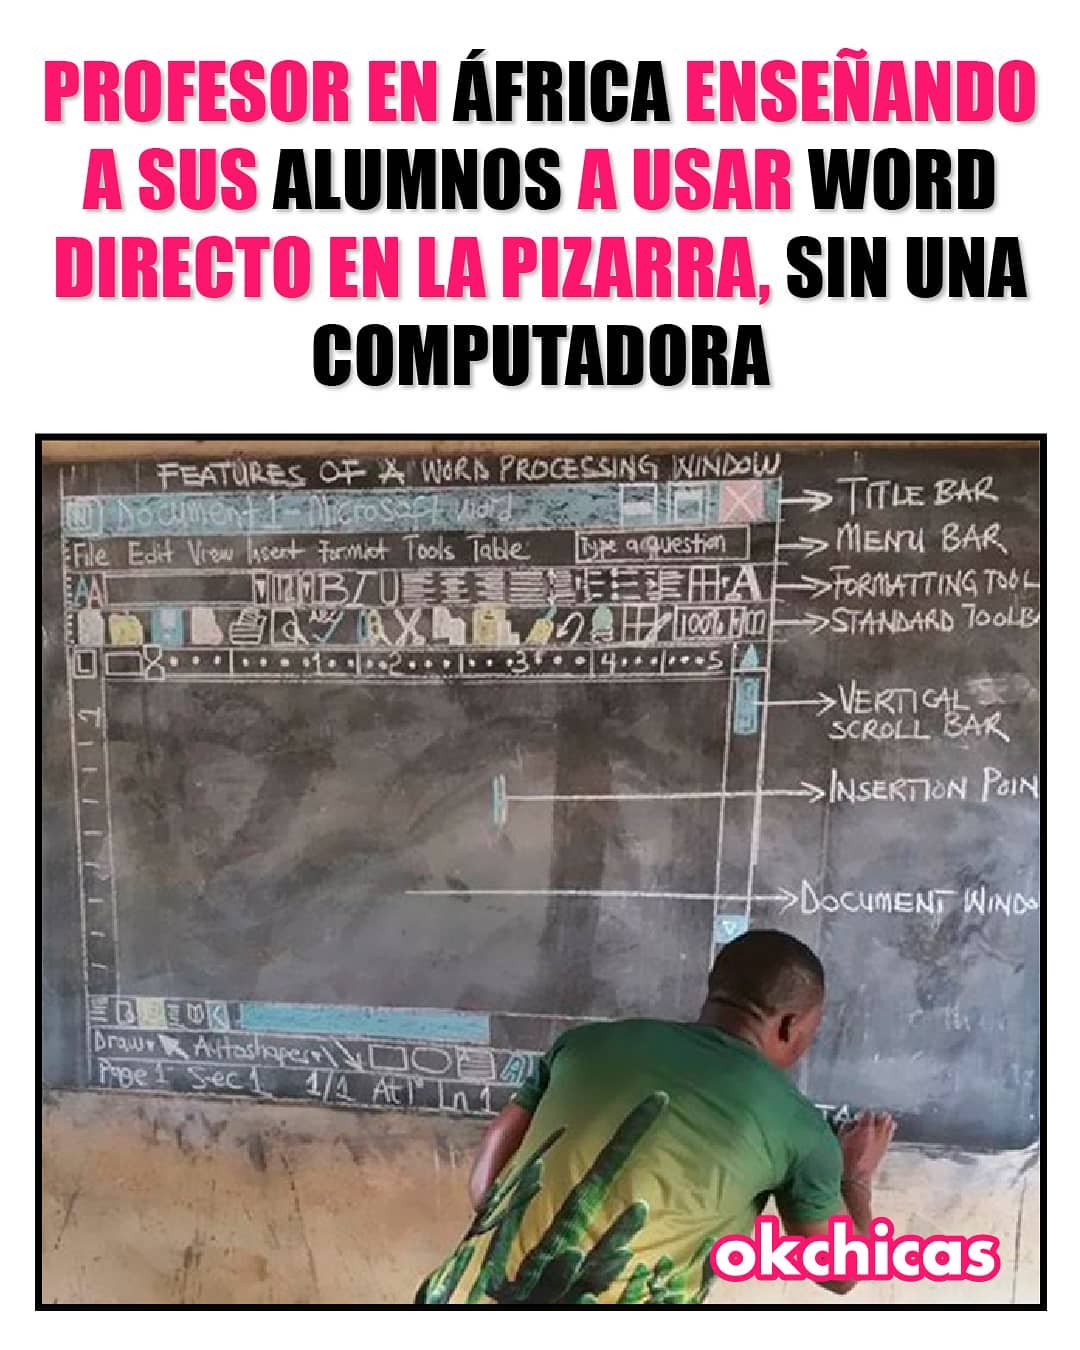 Profesor en África enseñando a sus alumnos a usar Word directo en la pizarra, sin una computadora.